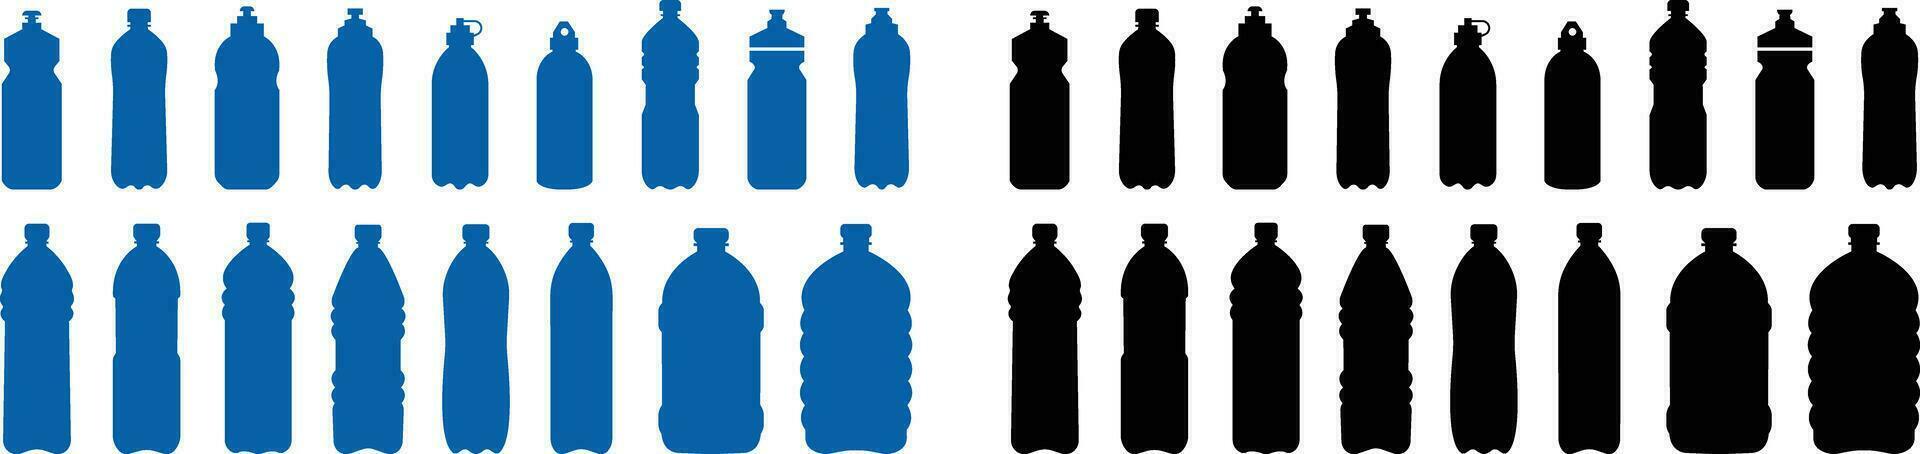 el plastico botella negro o azul icono colocar. vector plano estilo firmar . envase agua botella para deporte. natural y sano estilo de vida concepto agua embotellado envase líquido